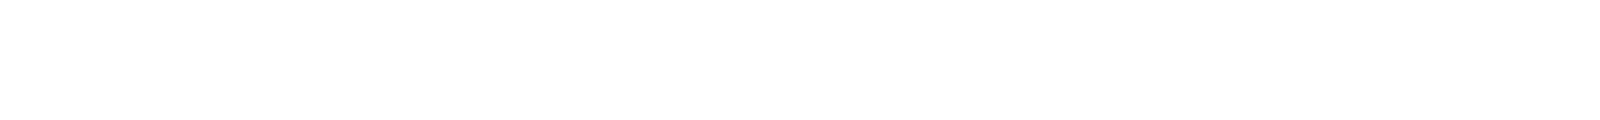 Flipperteile.com-Logo